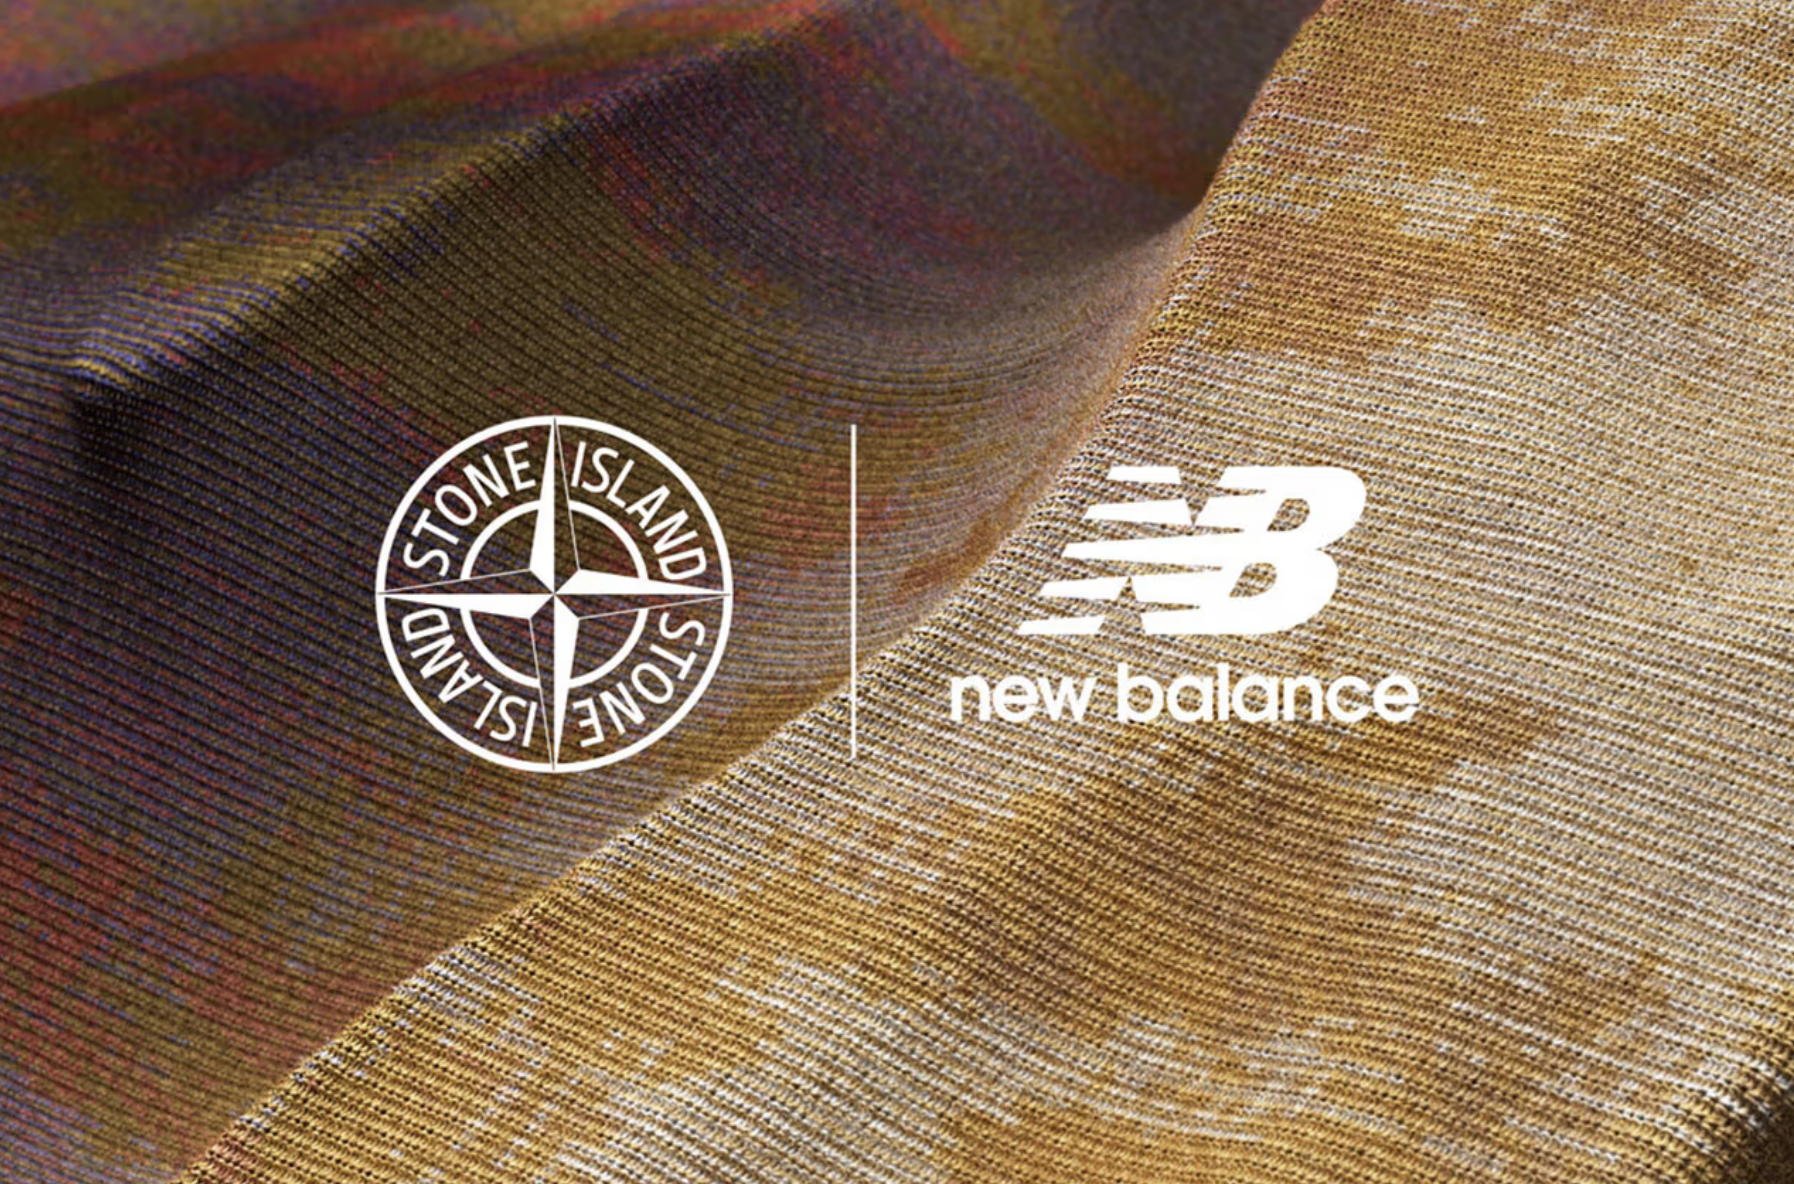 Stone Island x New Balance : une collaboration prometteuse en vue